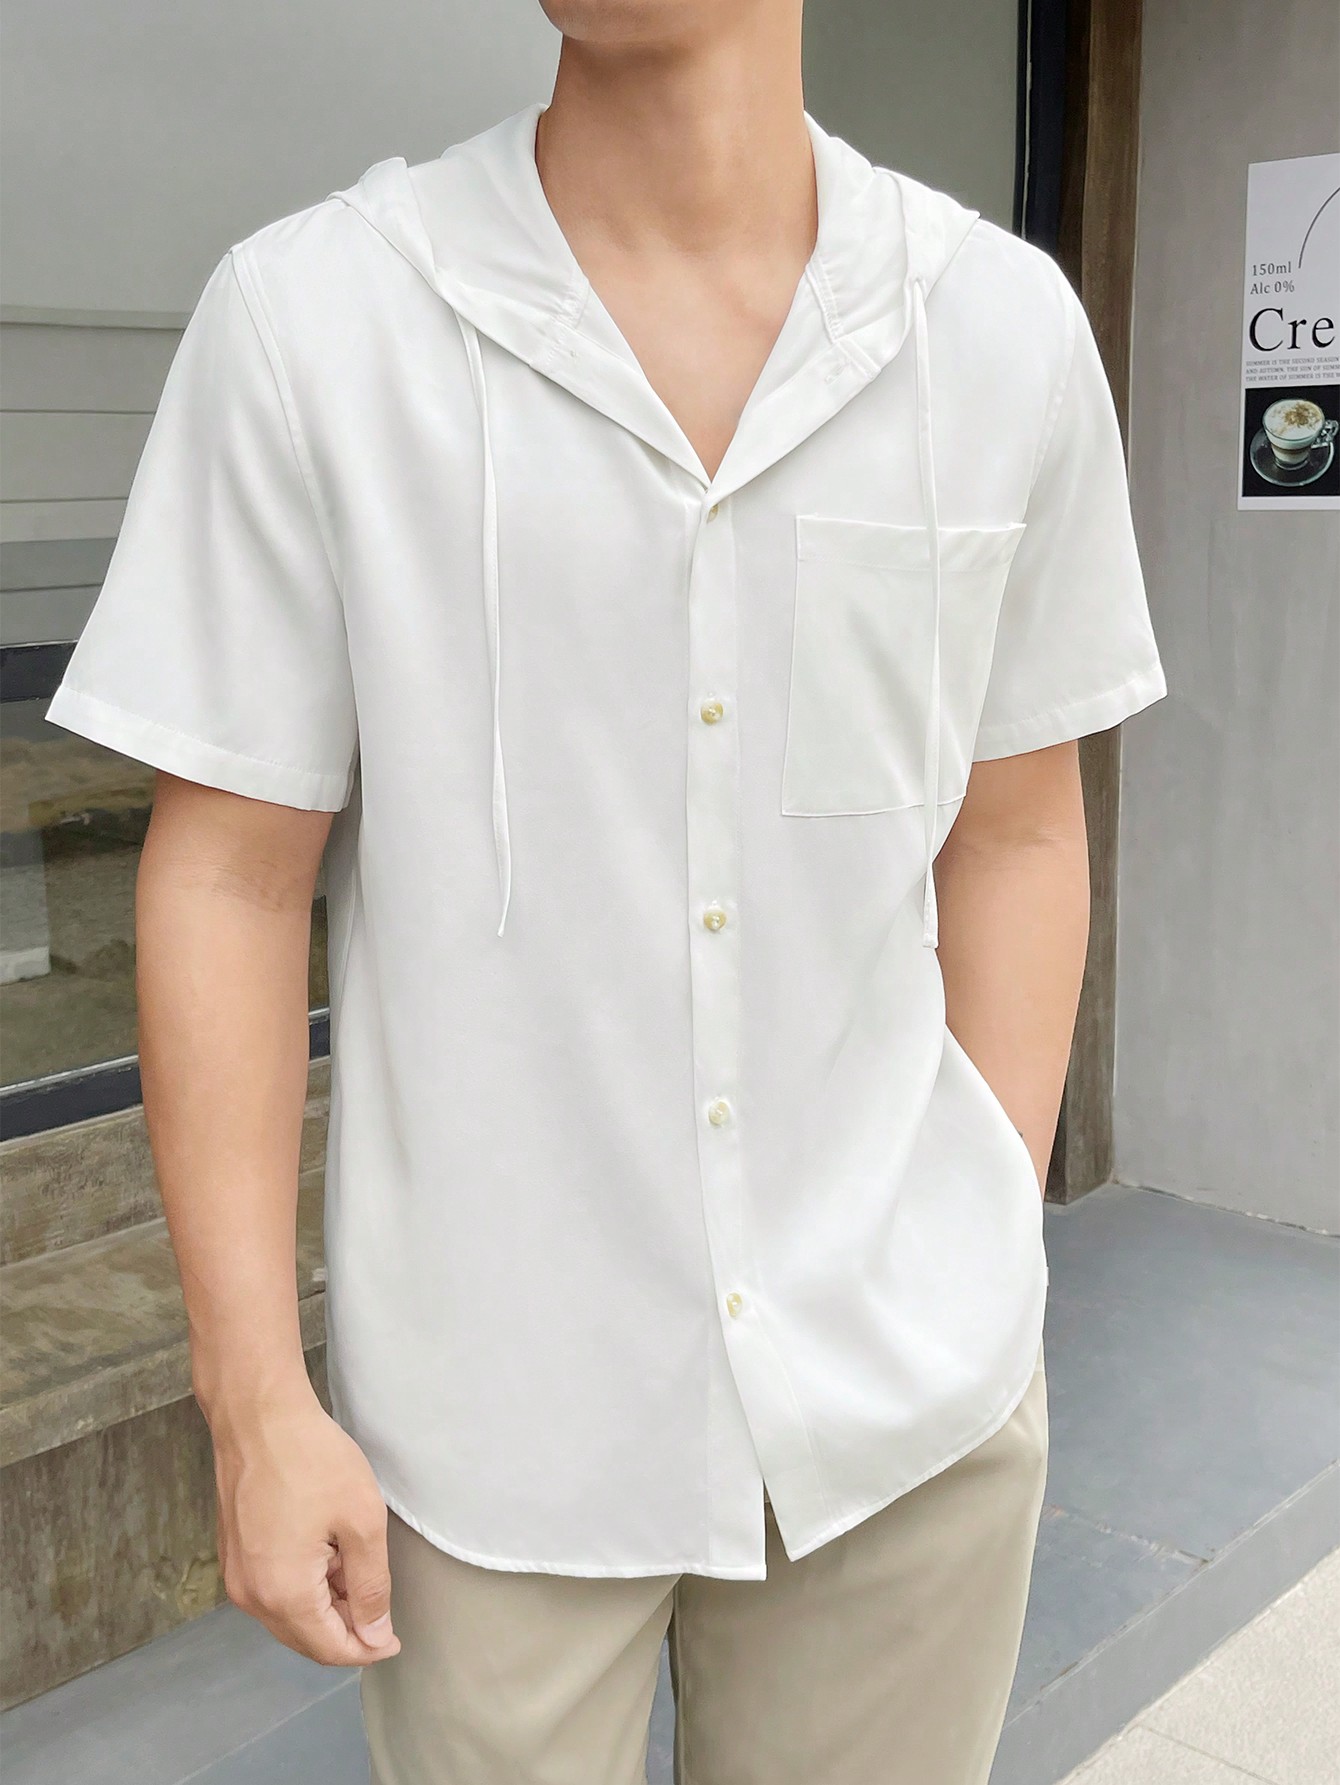 Мужская повседневная тканая рубашка с капюшоном и короткими рукавами Manfinity Hypemode, белый